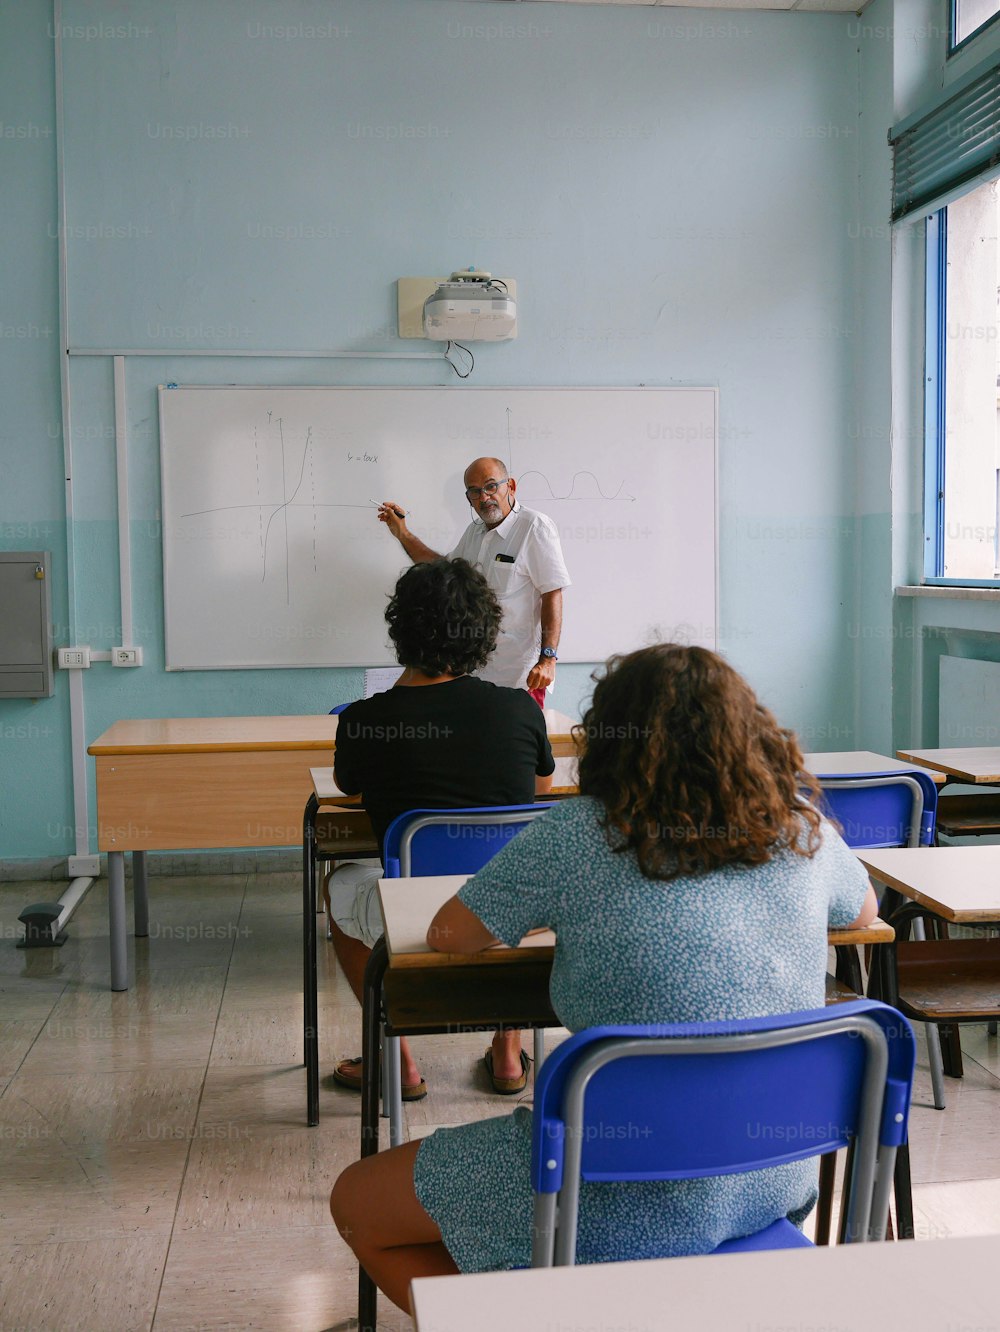 Un homme debout devant un tableau blanc dans une salle de classe